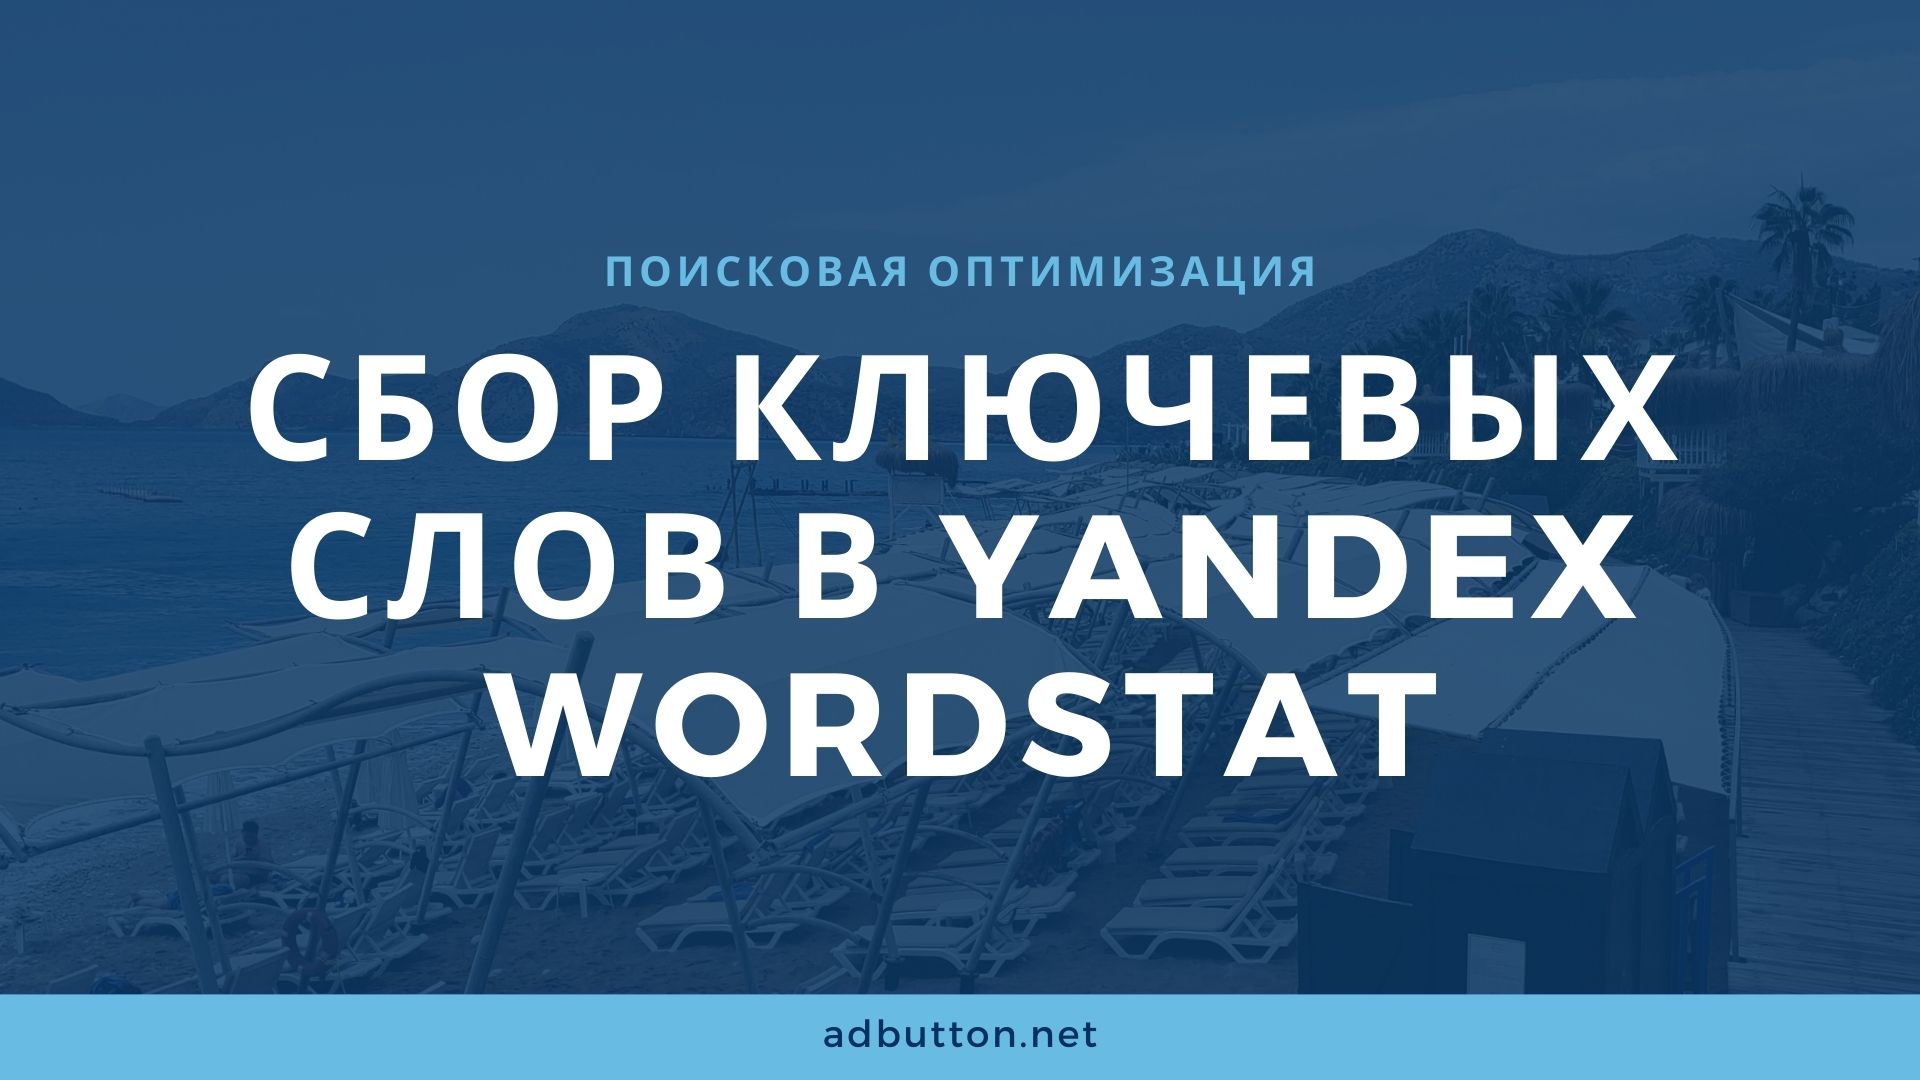 Yandex Wordstat — запросы ключевых слов и разработка семантического ядра